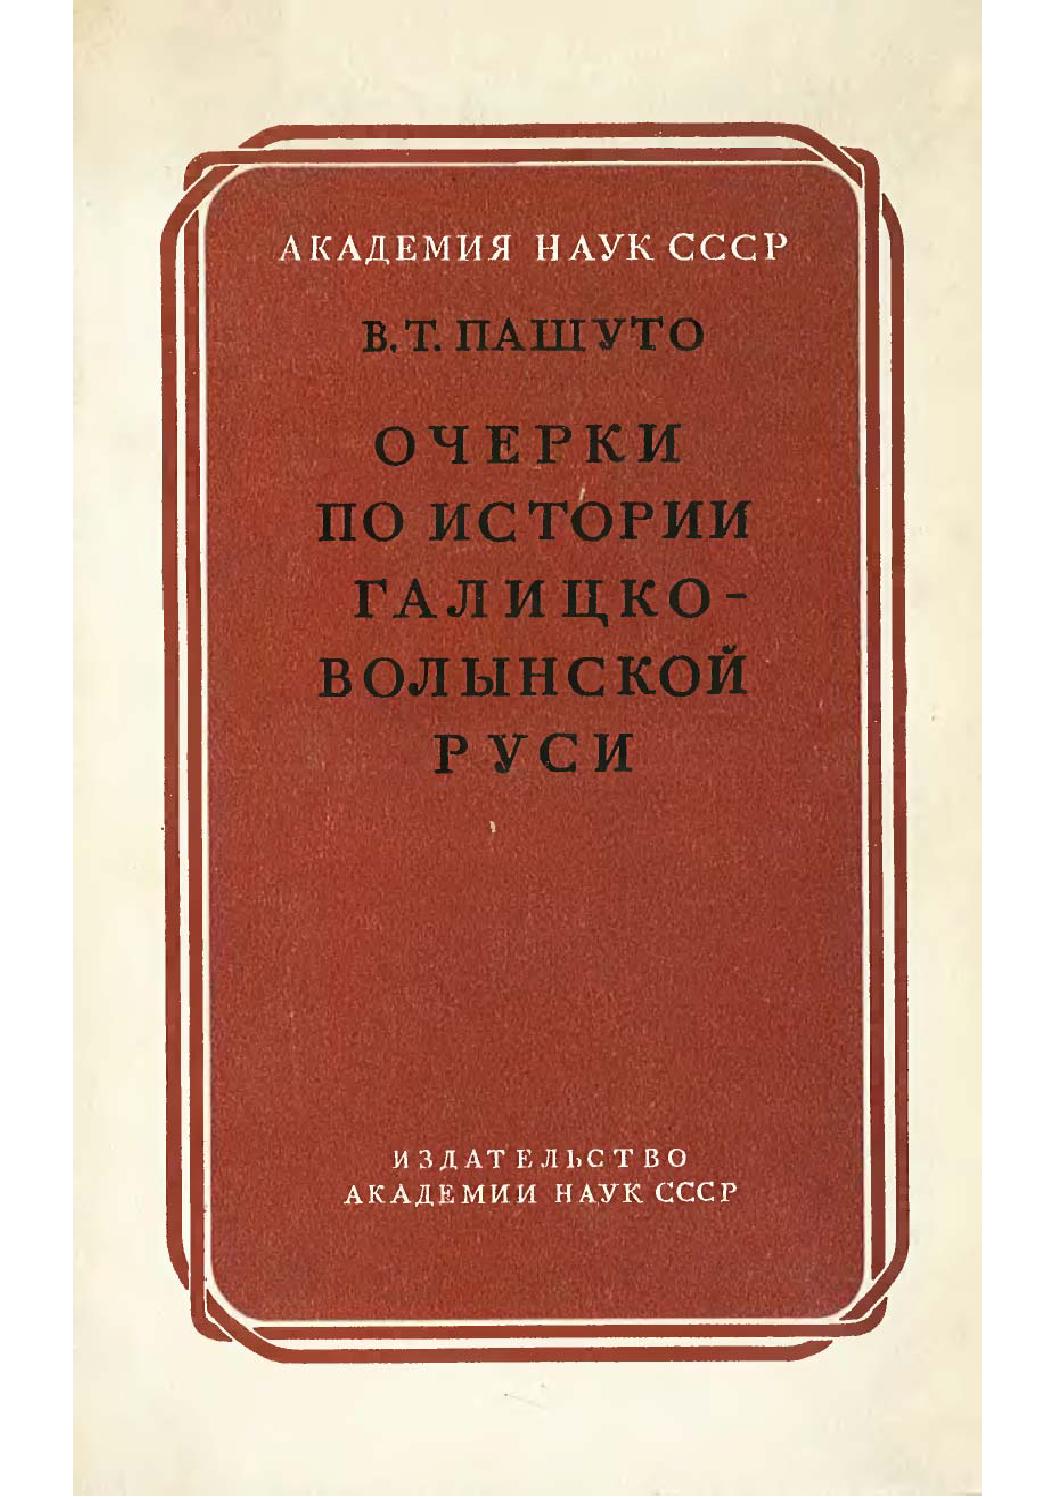 Очерки по истории Галицко-Волынской Руси, 1950, В.Т. Пашуто